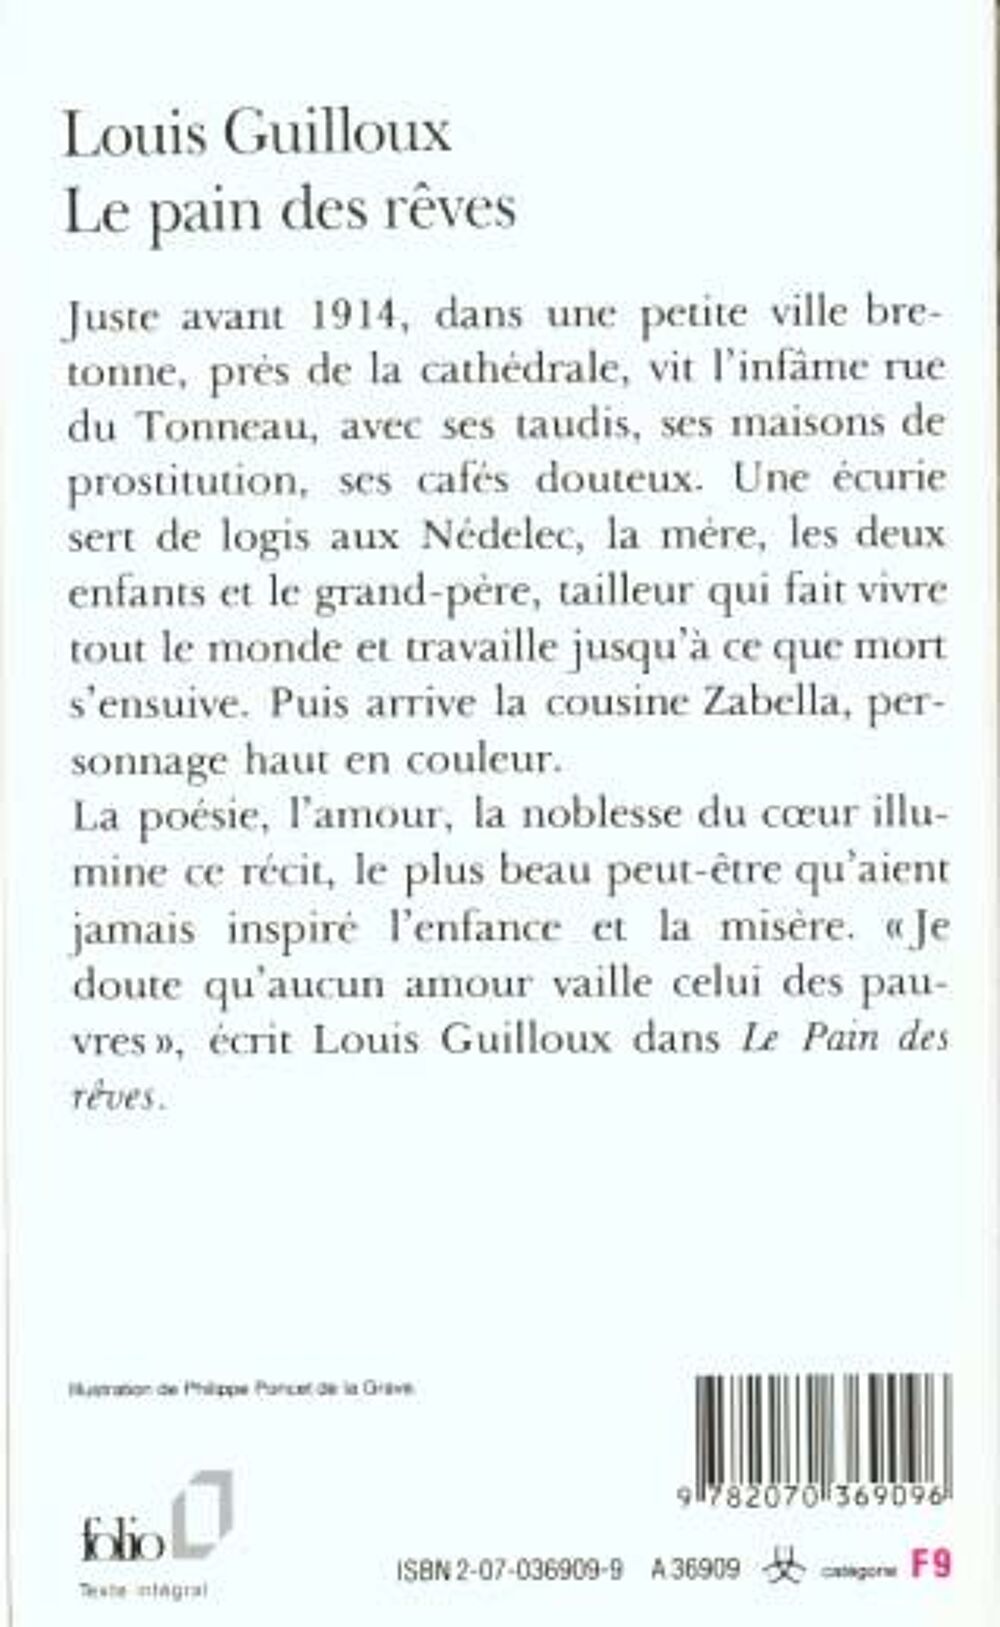 Le pain des reves- Louis Guilloux, Livres et BD